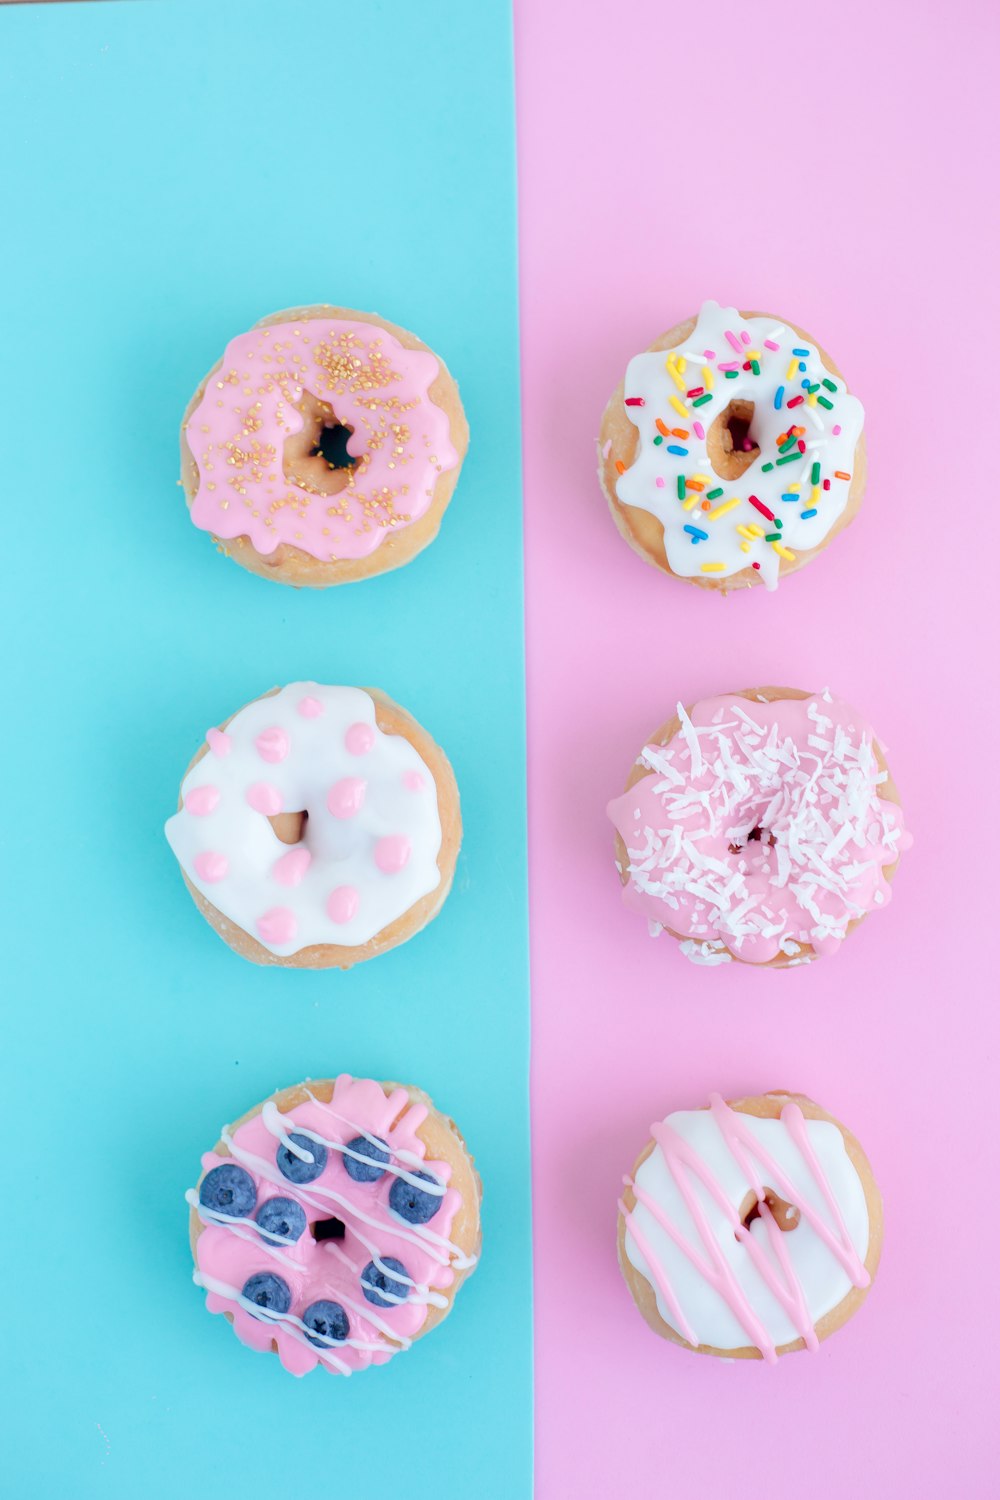 Sechs Donuts mit verschiedenen Geschmacksrichtungen